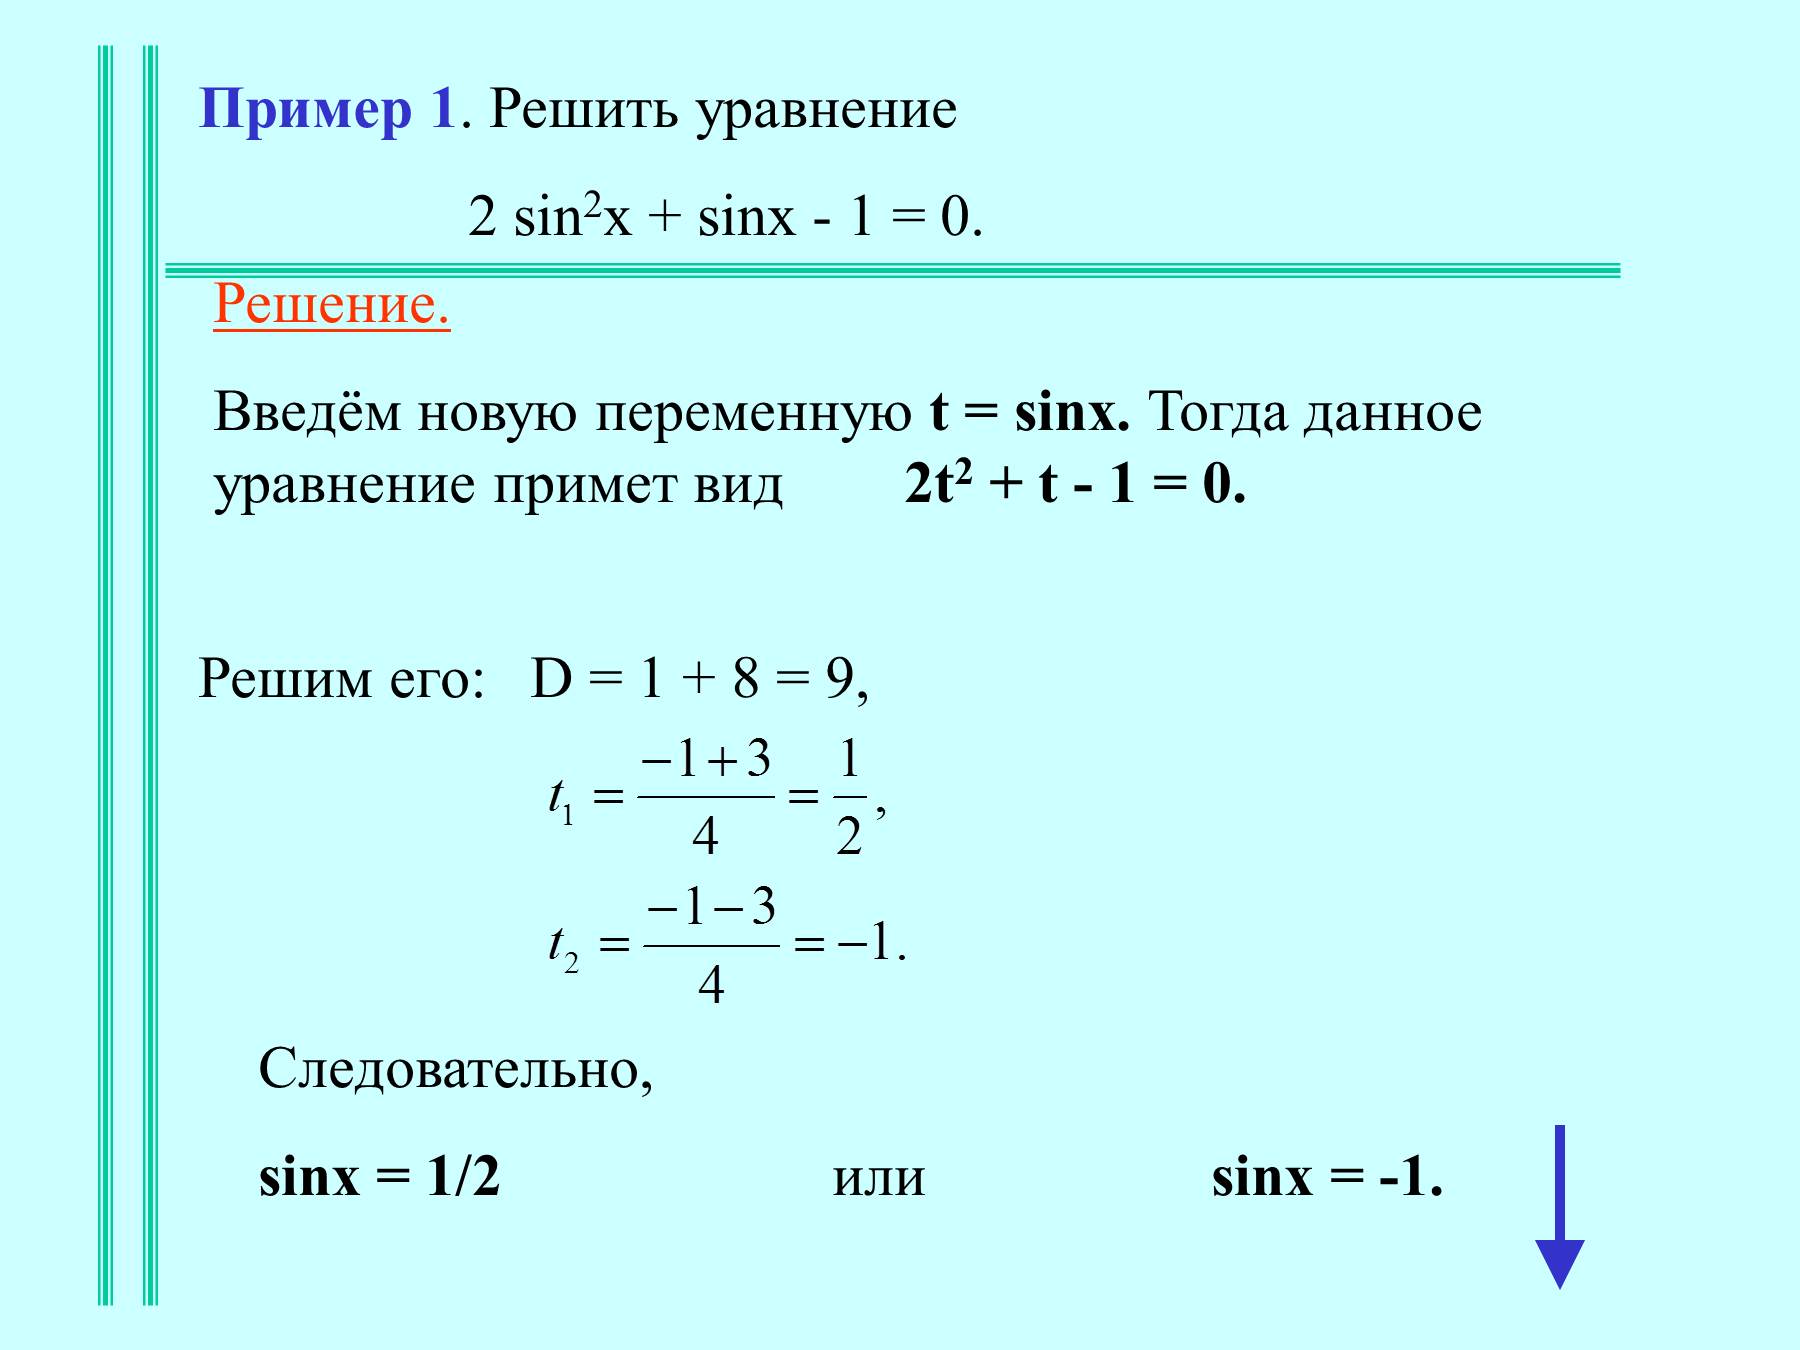 Решите уравнение 2sinx-1=1